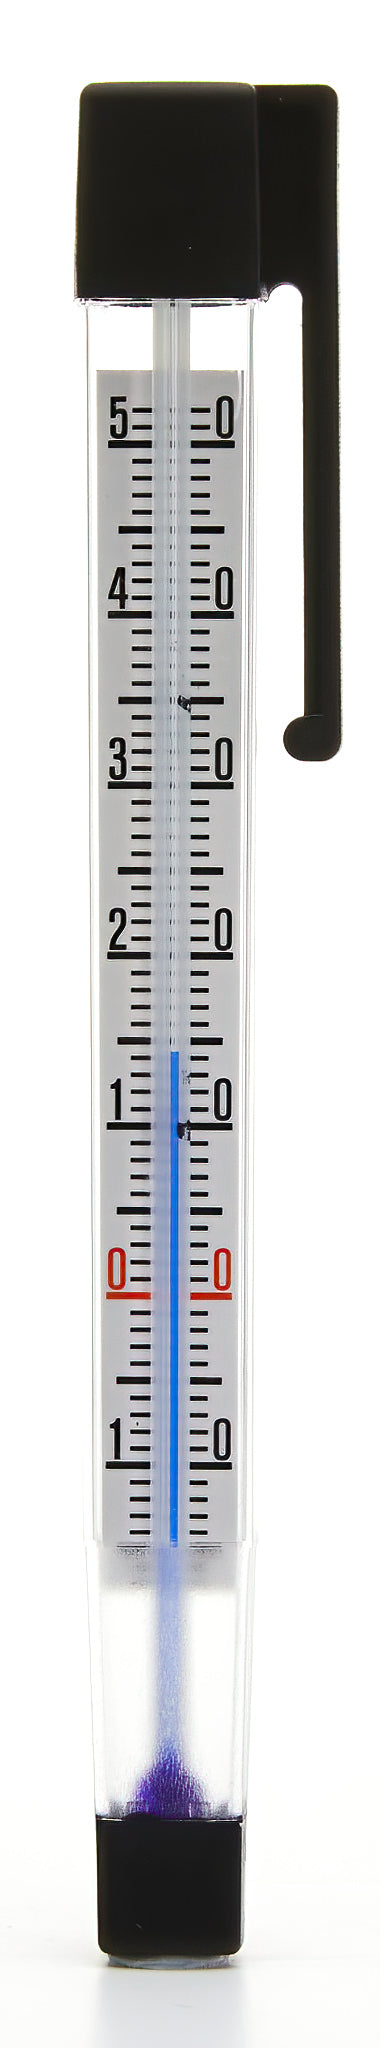 Multi-purpose thermometer with clip